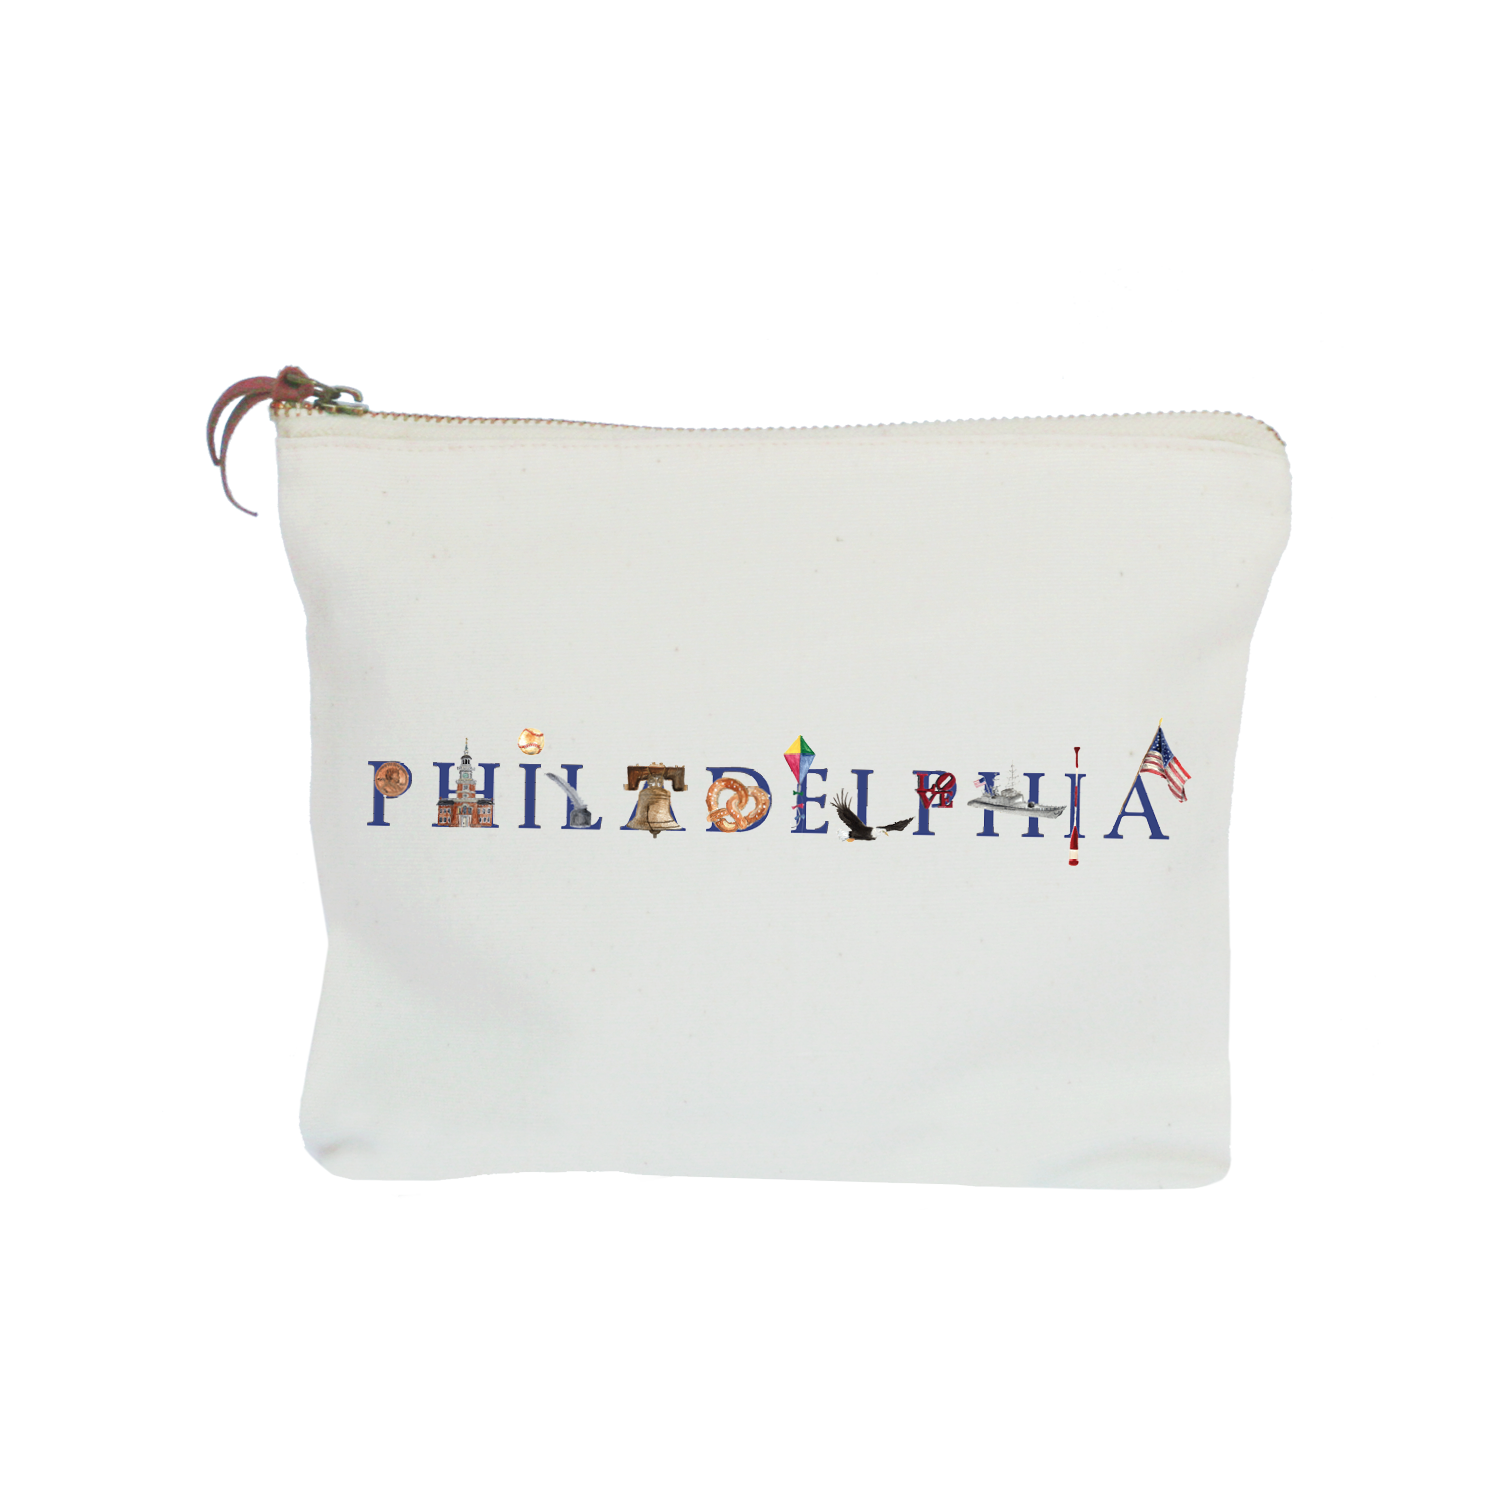 Philadelphia zipper pouch